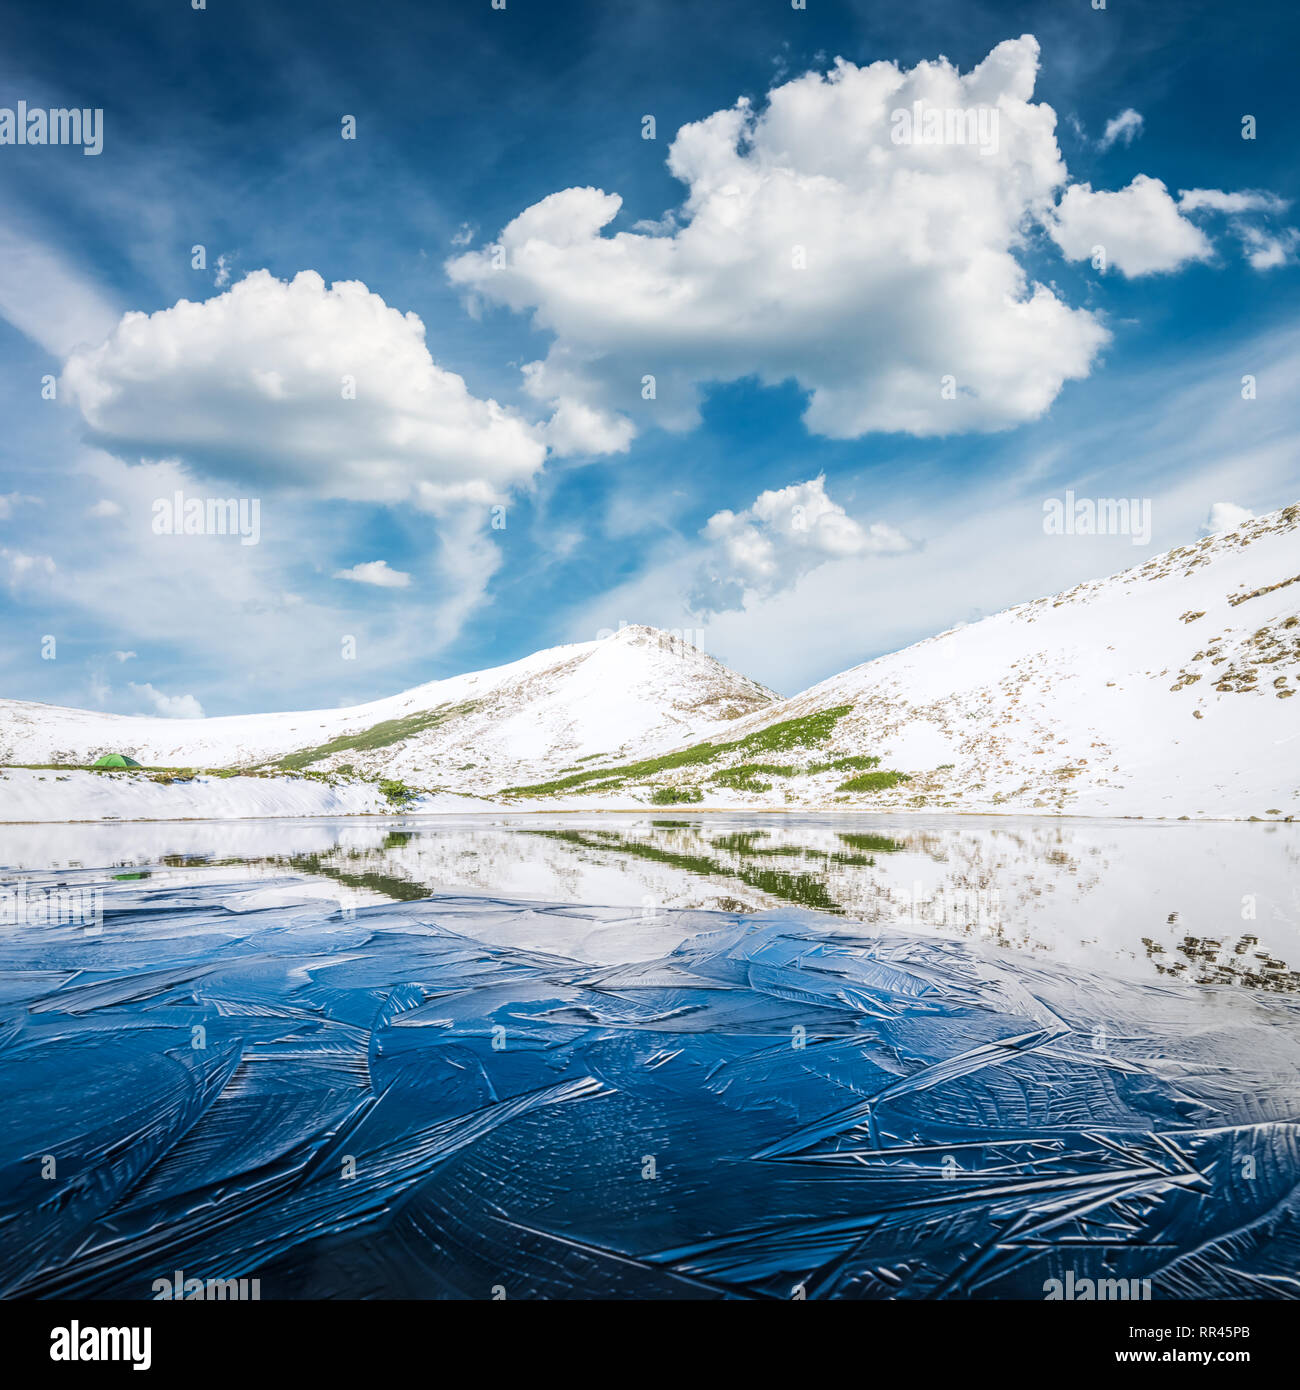 Gefrorenen Bergsee mit Blue Ice und Risse auf der Oberfläche. Malerische Landschaft mit schneebedeckten Hügeln unter einem blauen bewölkten Himmel Stockfoto